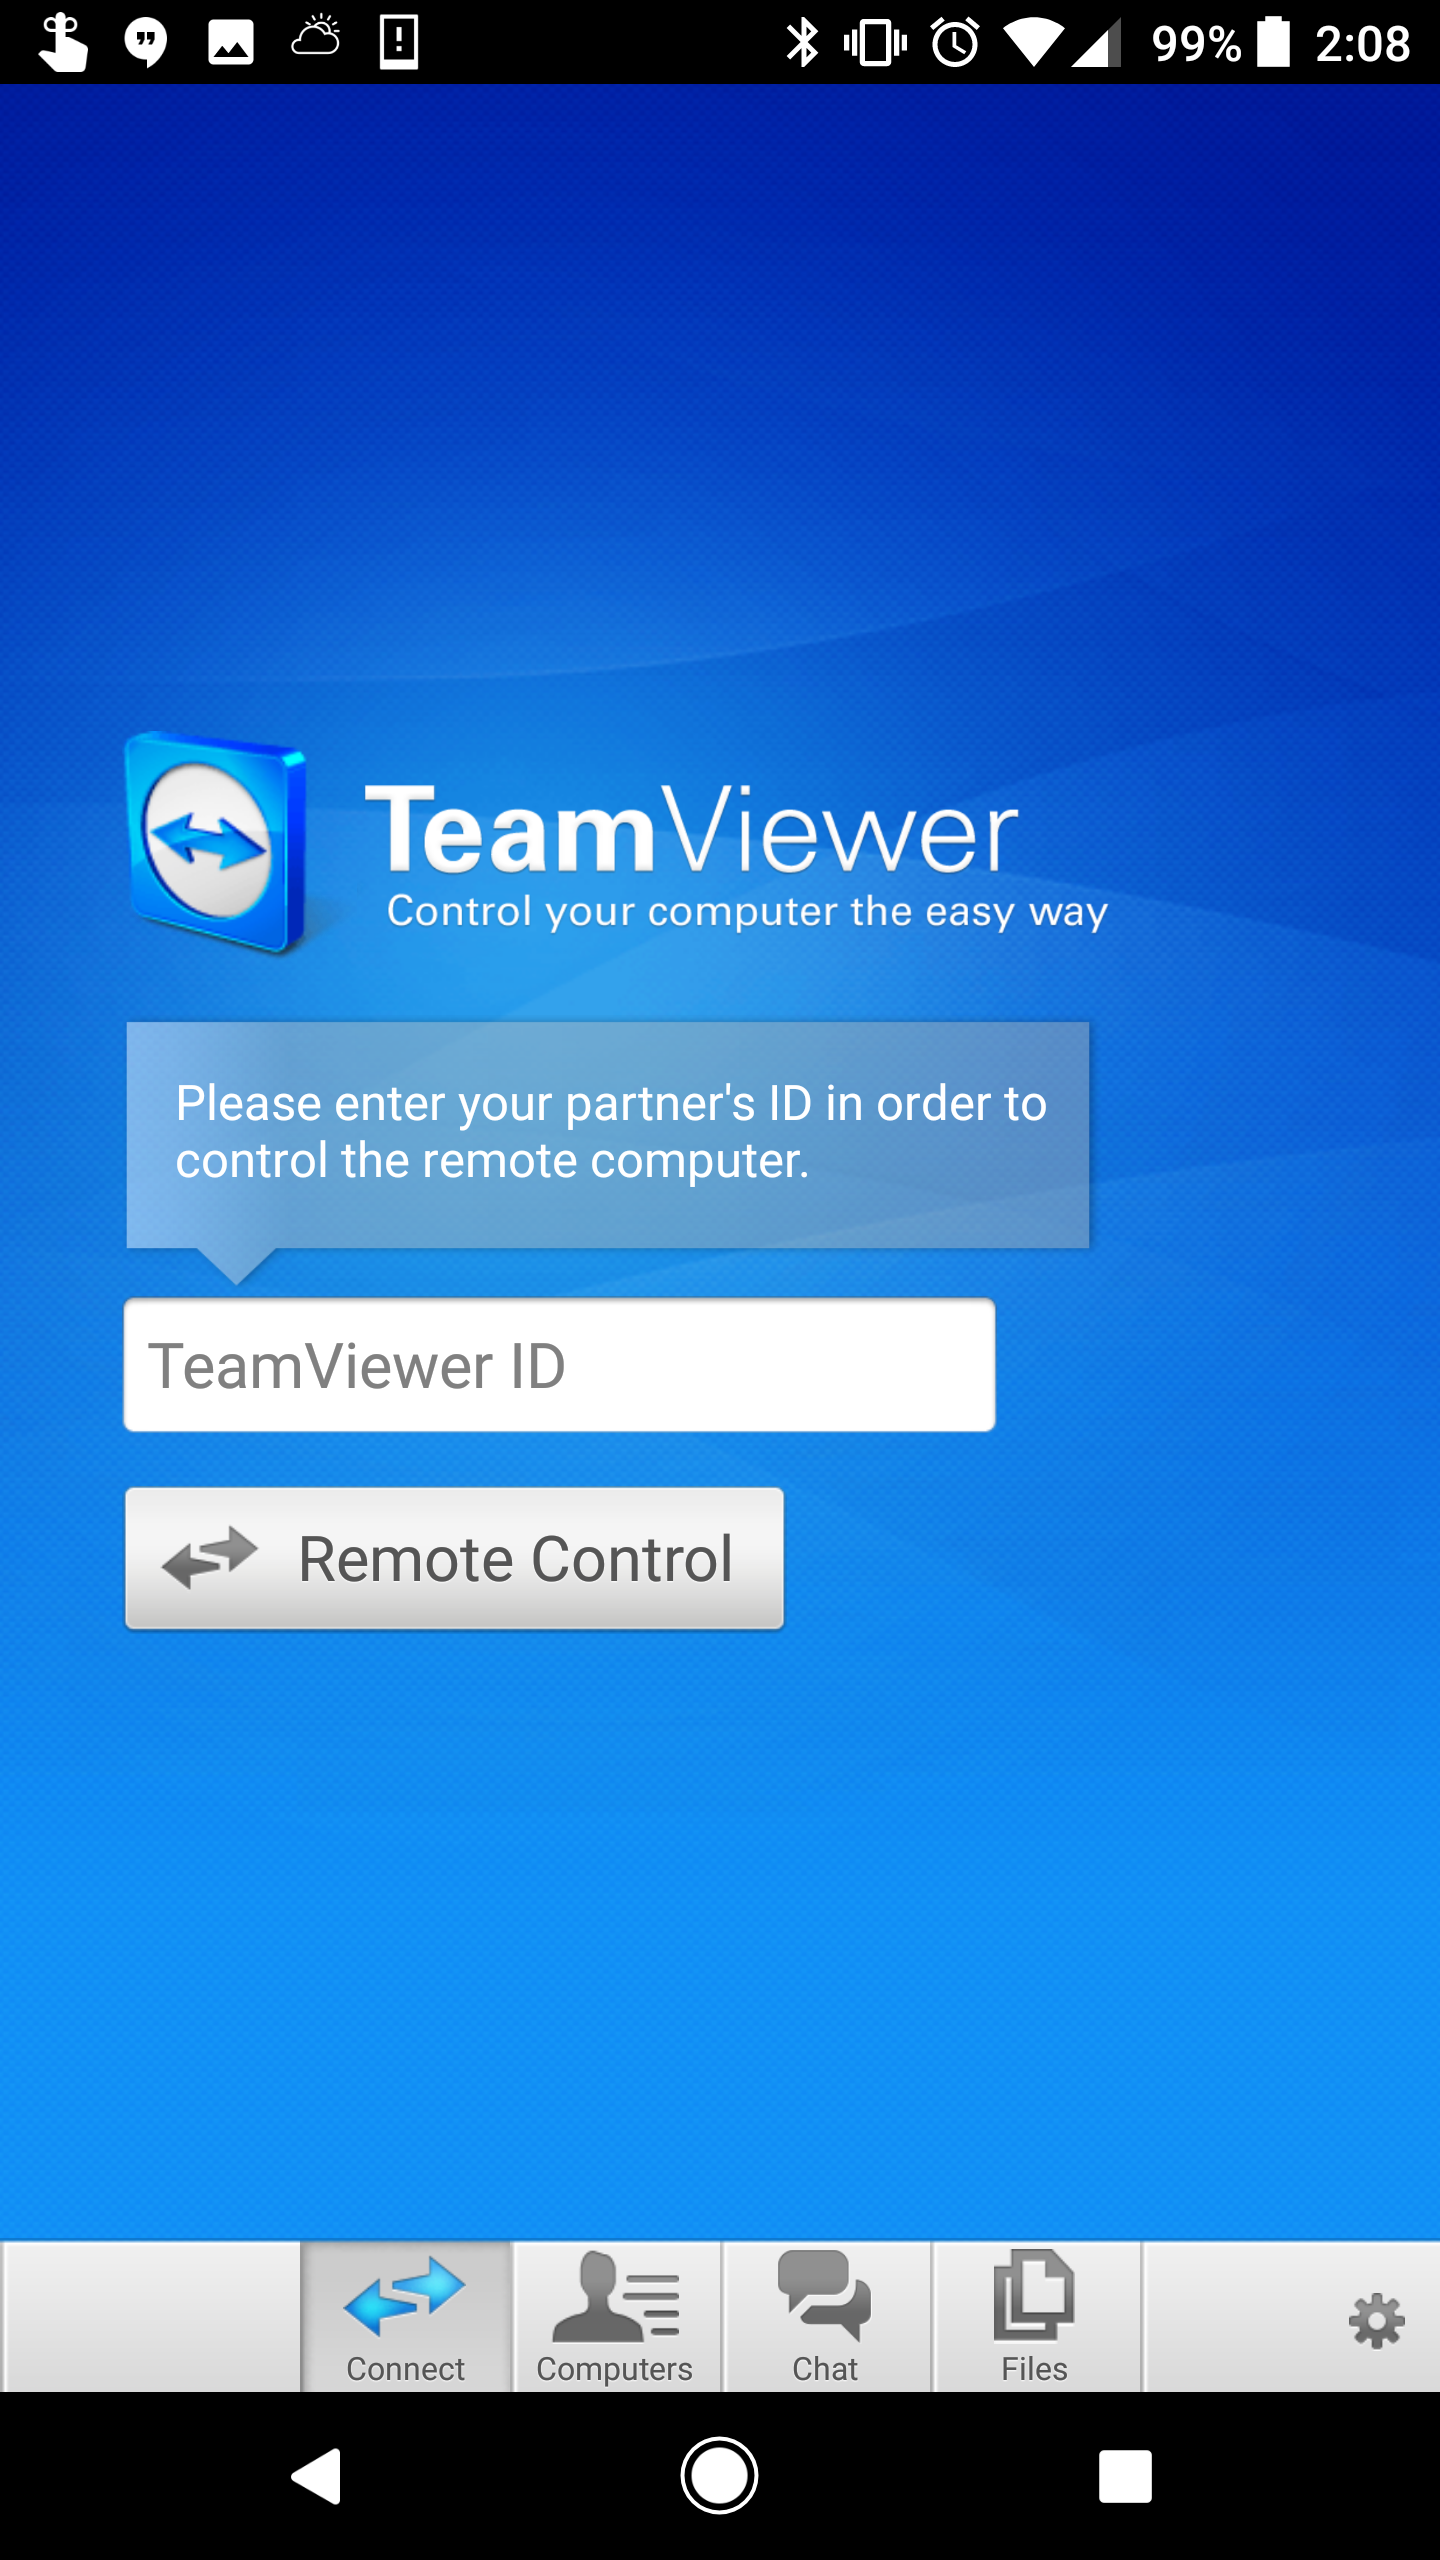 teamviewer 9 download gratis italiano